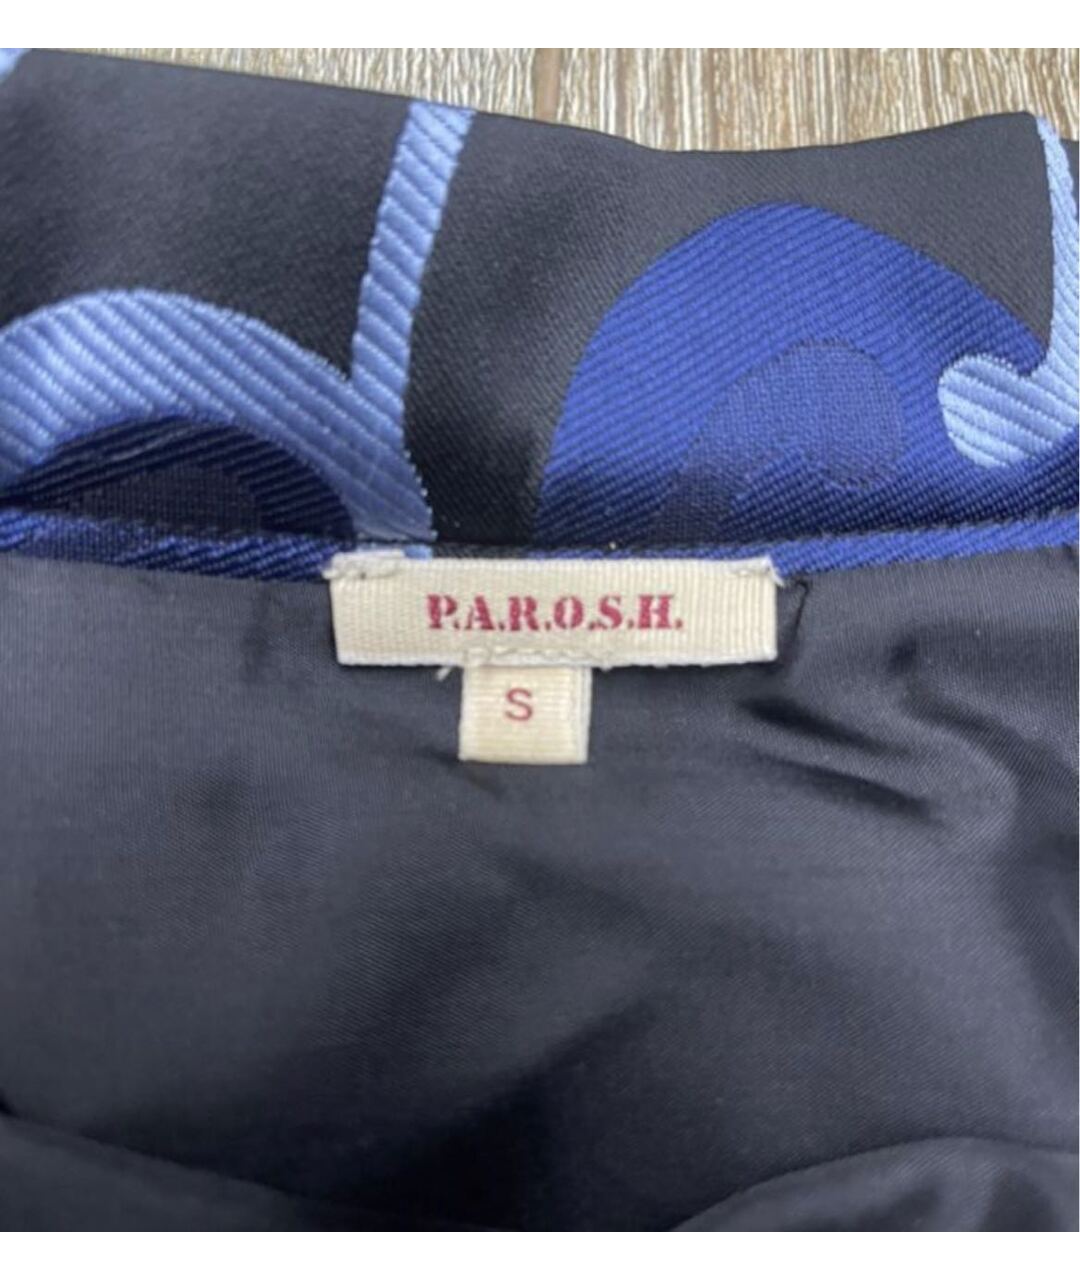 P.A.R.O.S.H. Мульти юбка мини, фото 2